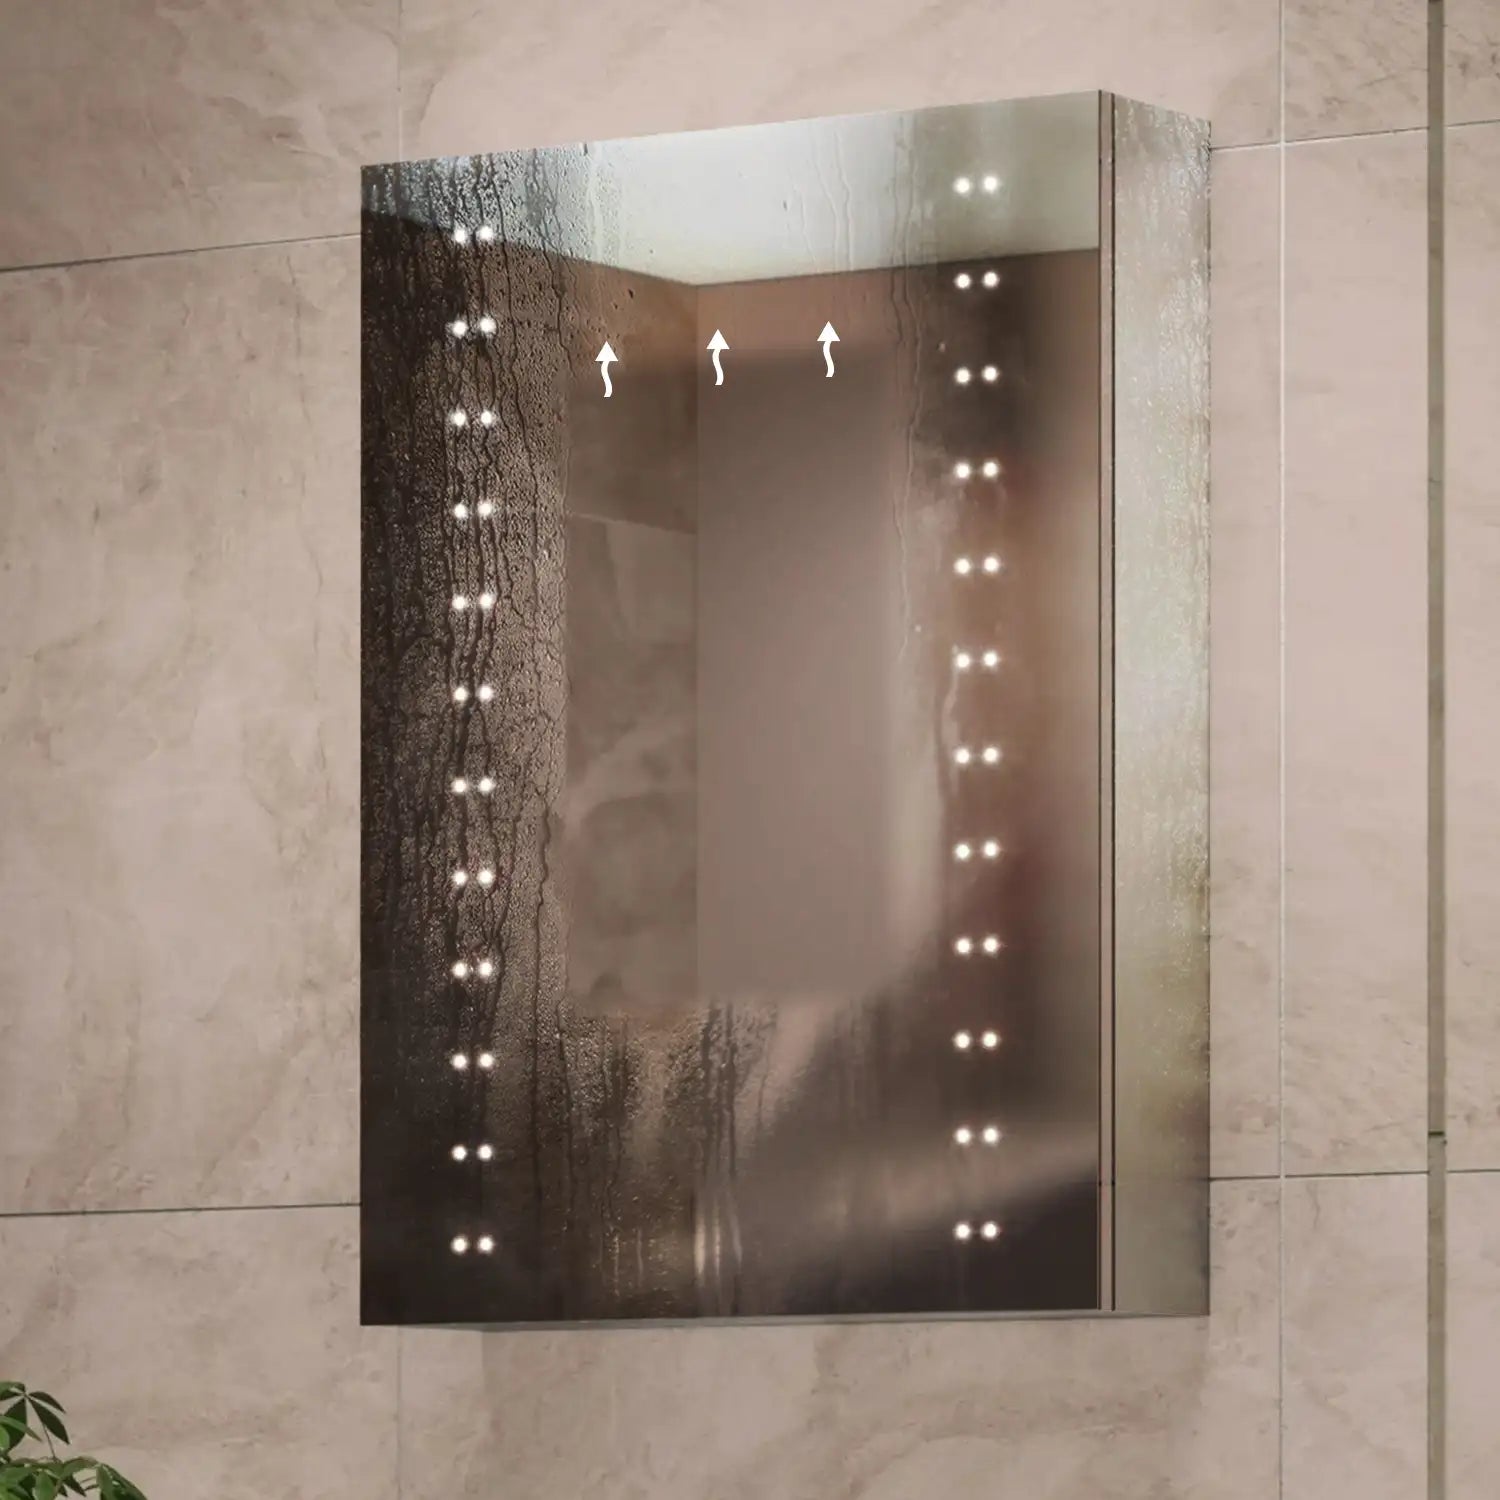 Hollis 500x700mm LED Illuminated Bathroom Mirror Cabinet #door-hinge-side_left-hinged